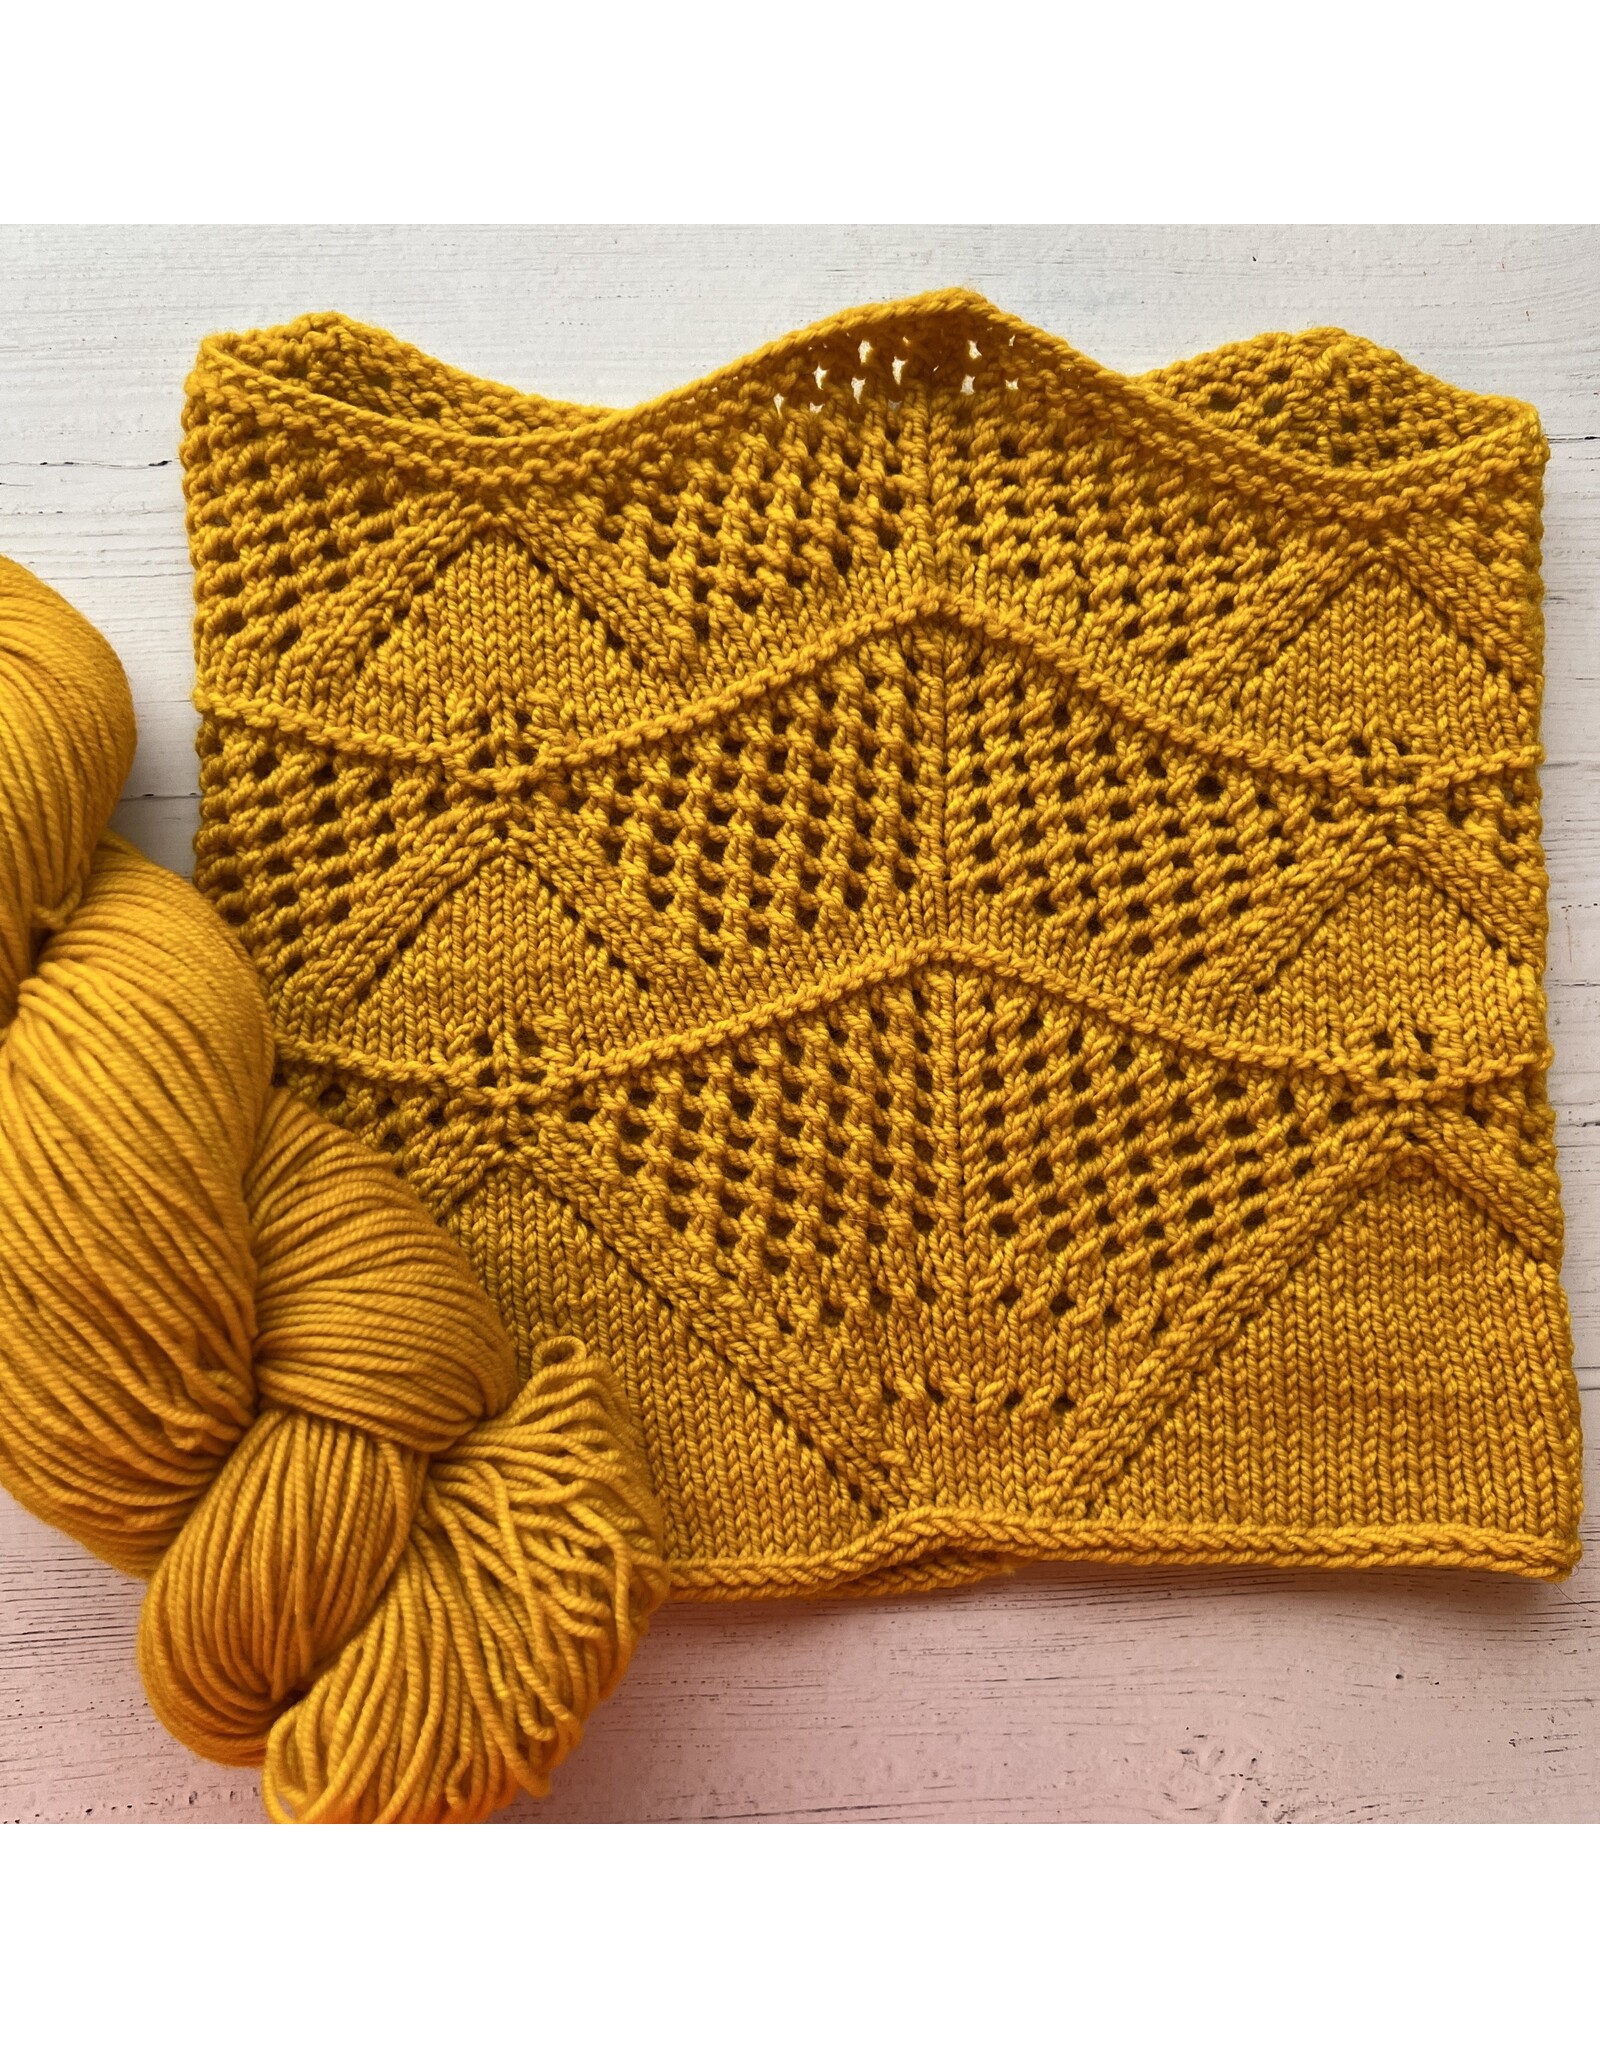 Dirty yarn? : r/crochet